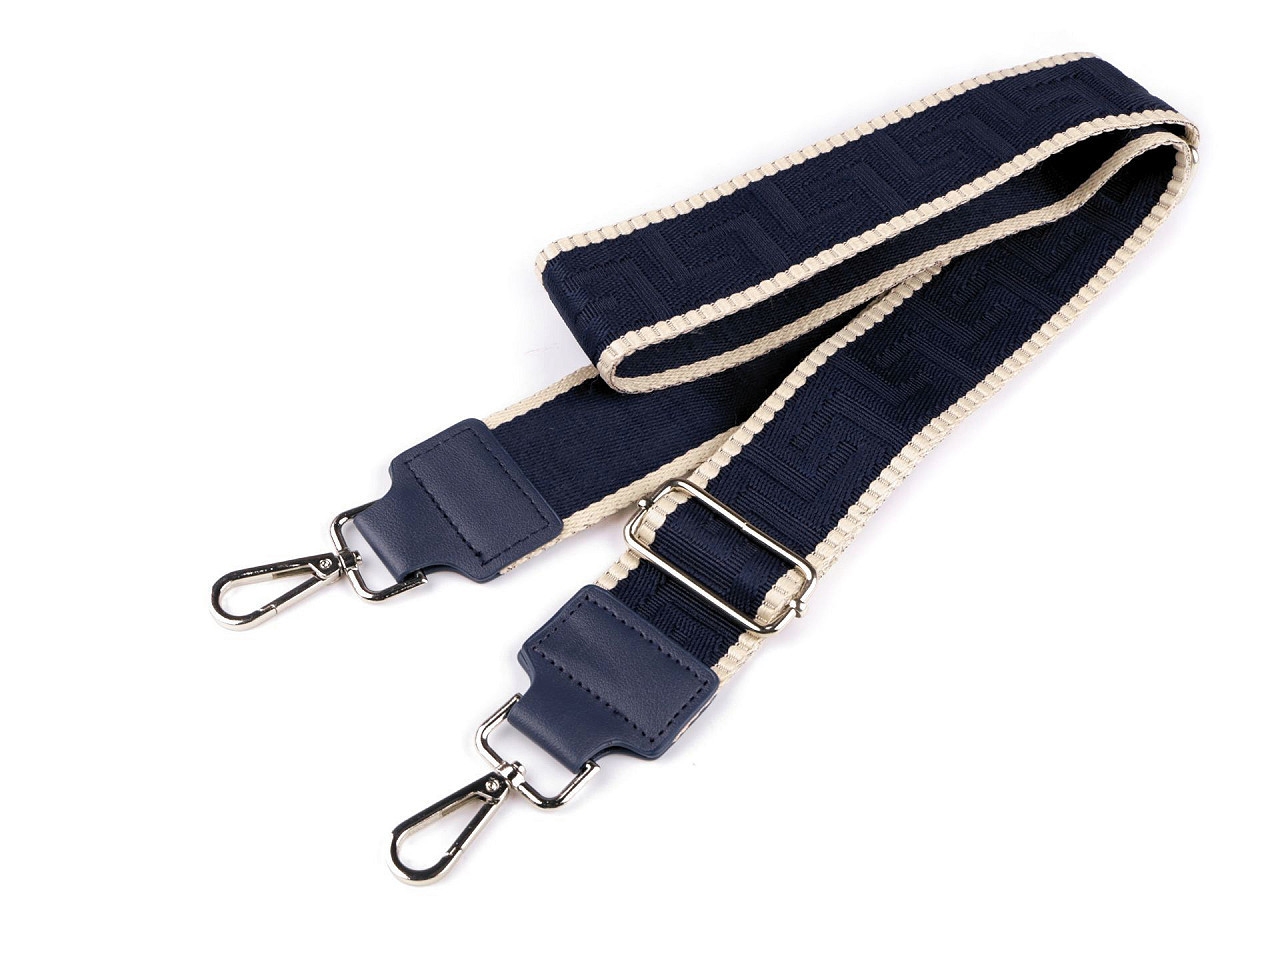 Textilní ucho / popruh na tašku s karabinami šíře 5 cm, barva 5 modrá tmavá